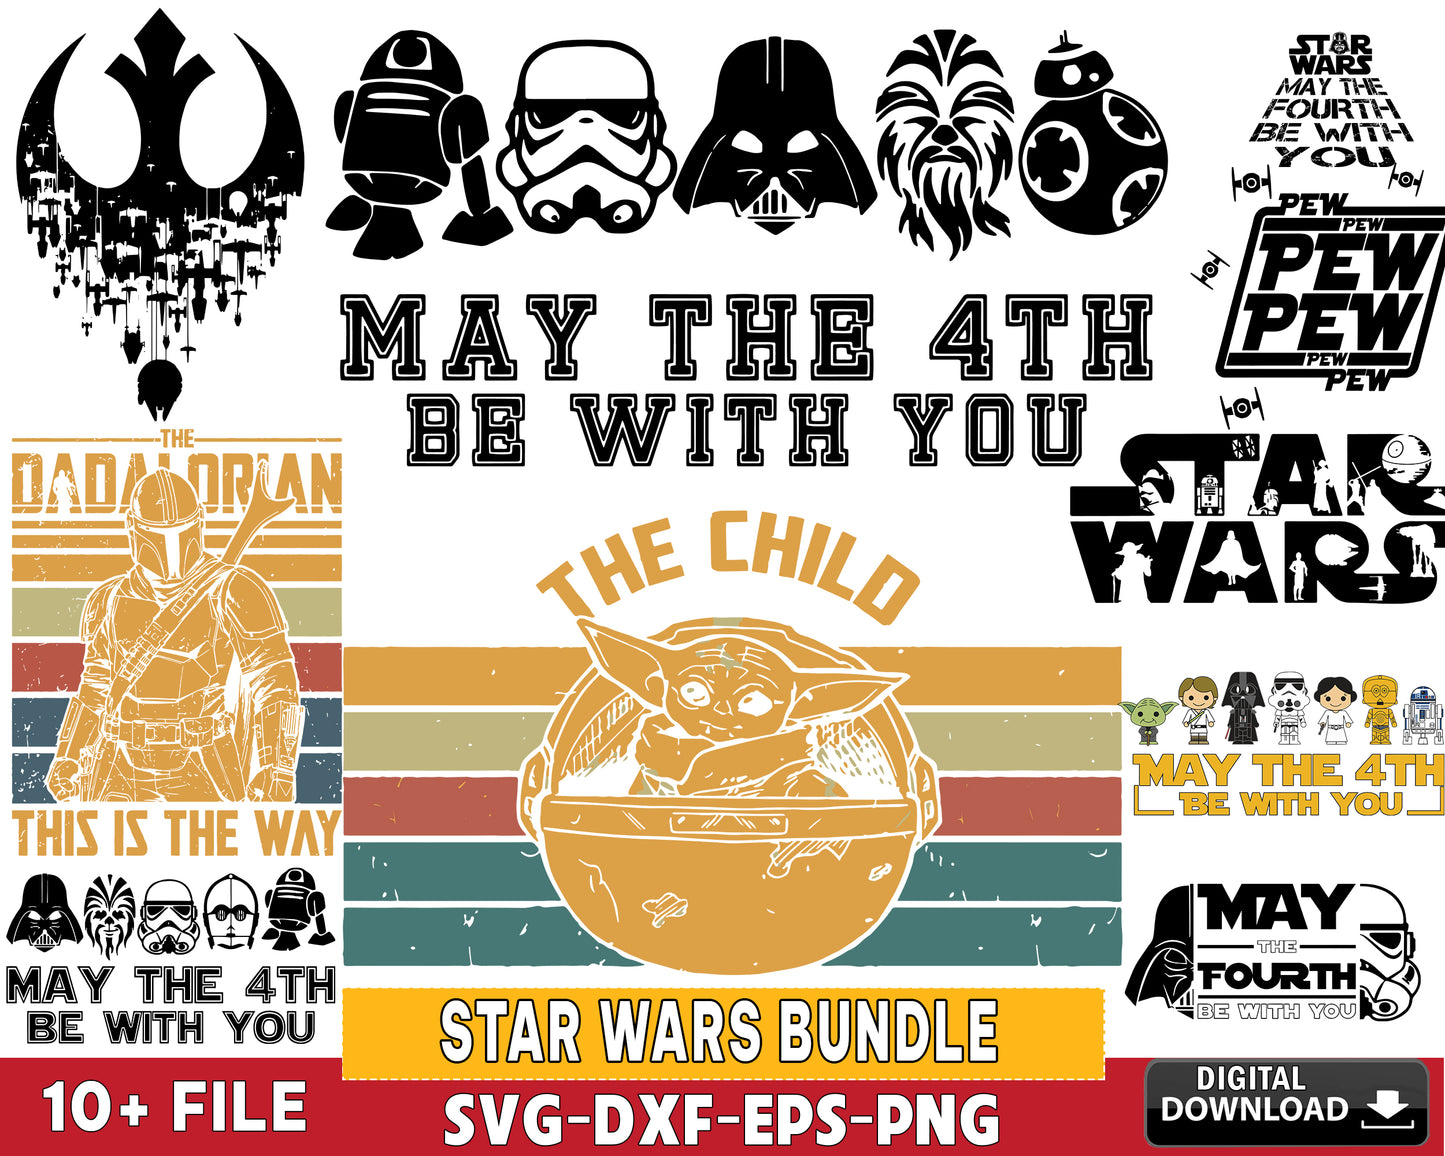 Star Wars Bundle svg,10 file star wars bundle svg eps png dxf , for Cricut, Silhouette, digital, file cut